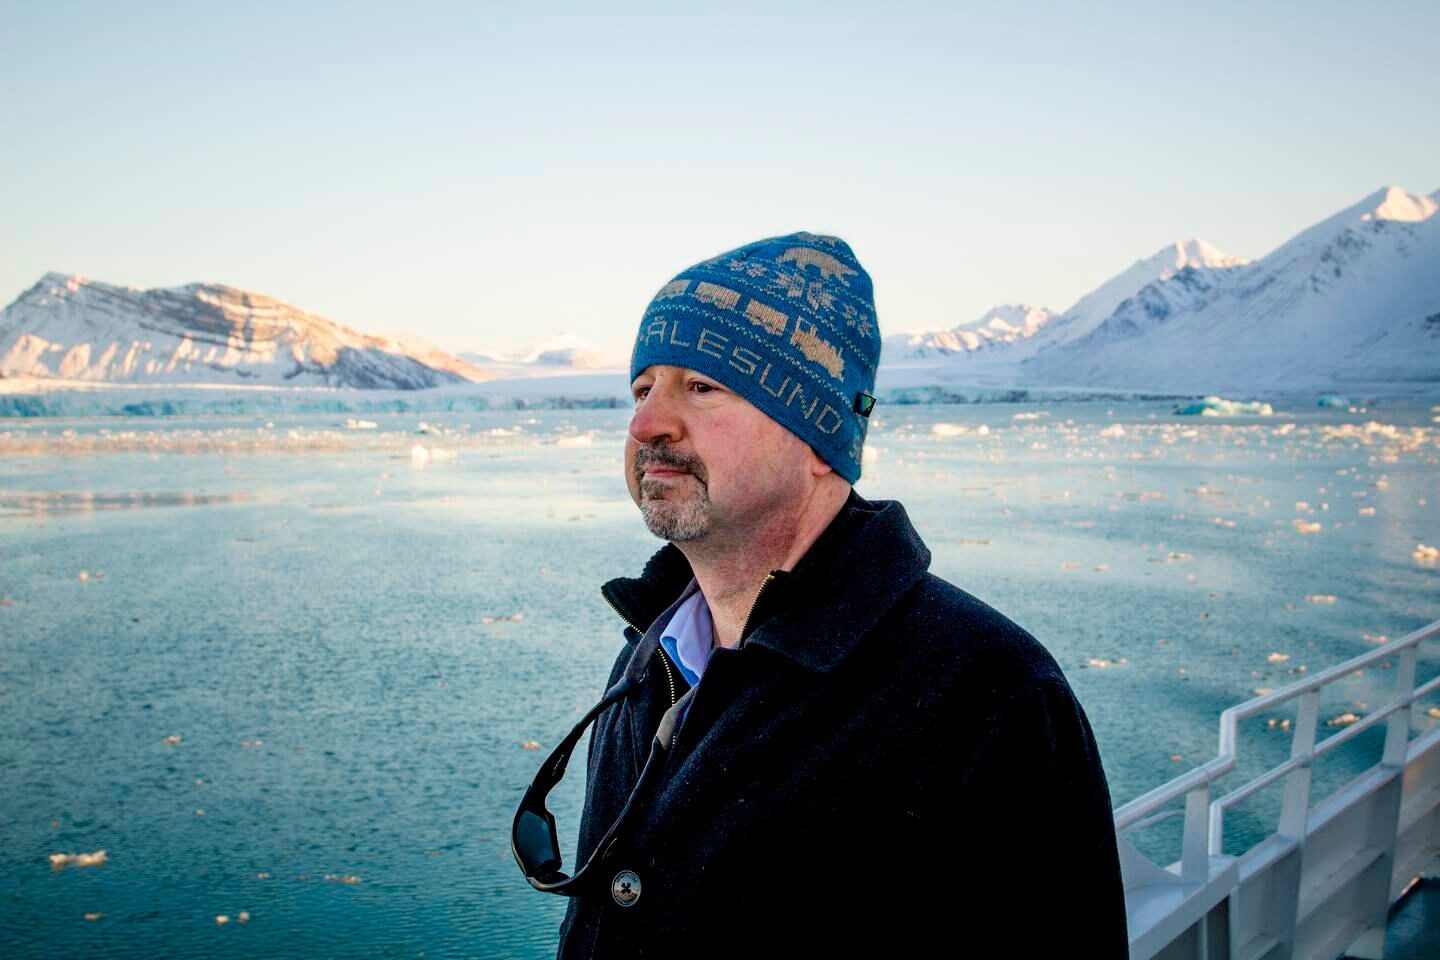 Den amerikanske klimaforskeren Michael Mann under et besøk i Ny-Ålesund på Svalbard i 2018. Mann mener den kraftige oppvarmingen i Arktis har forstyrret store vindsystemer og ført til mer ekstremvær på den nordlige halvkule. Andre forskere mener det er for tidlig å si om denne teorien faktisk stemmer.